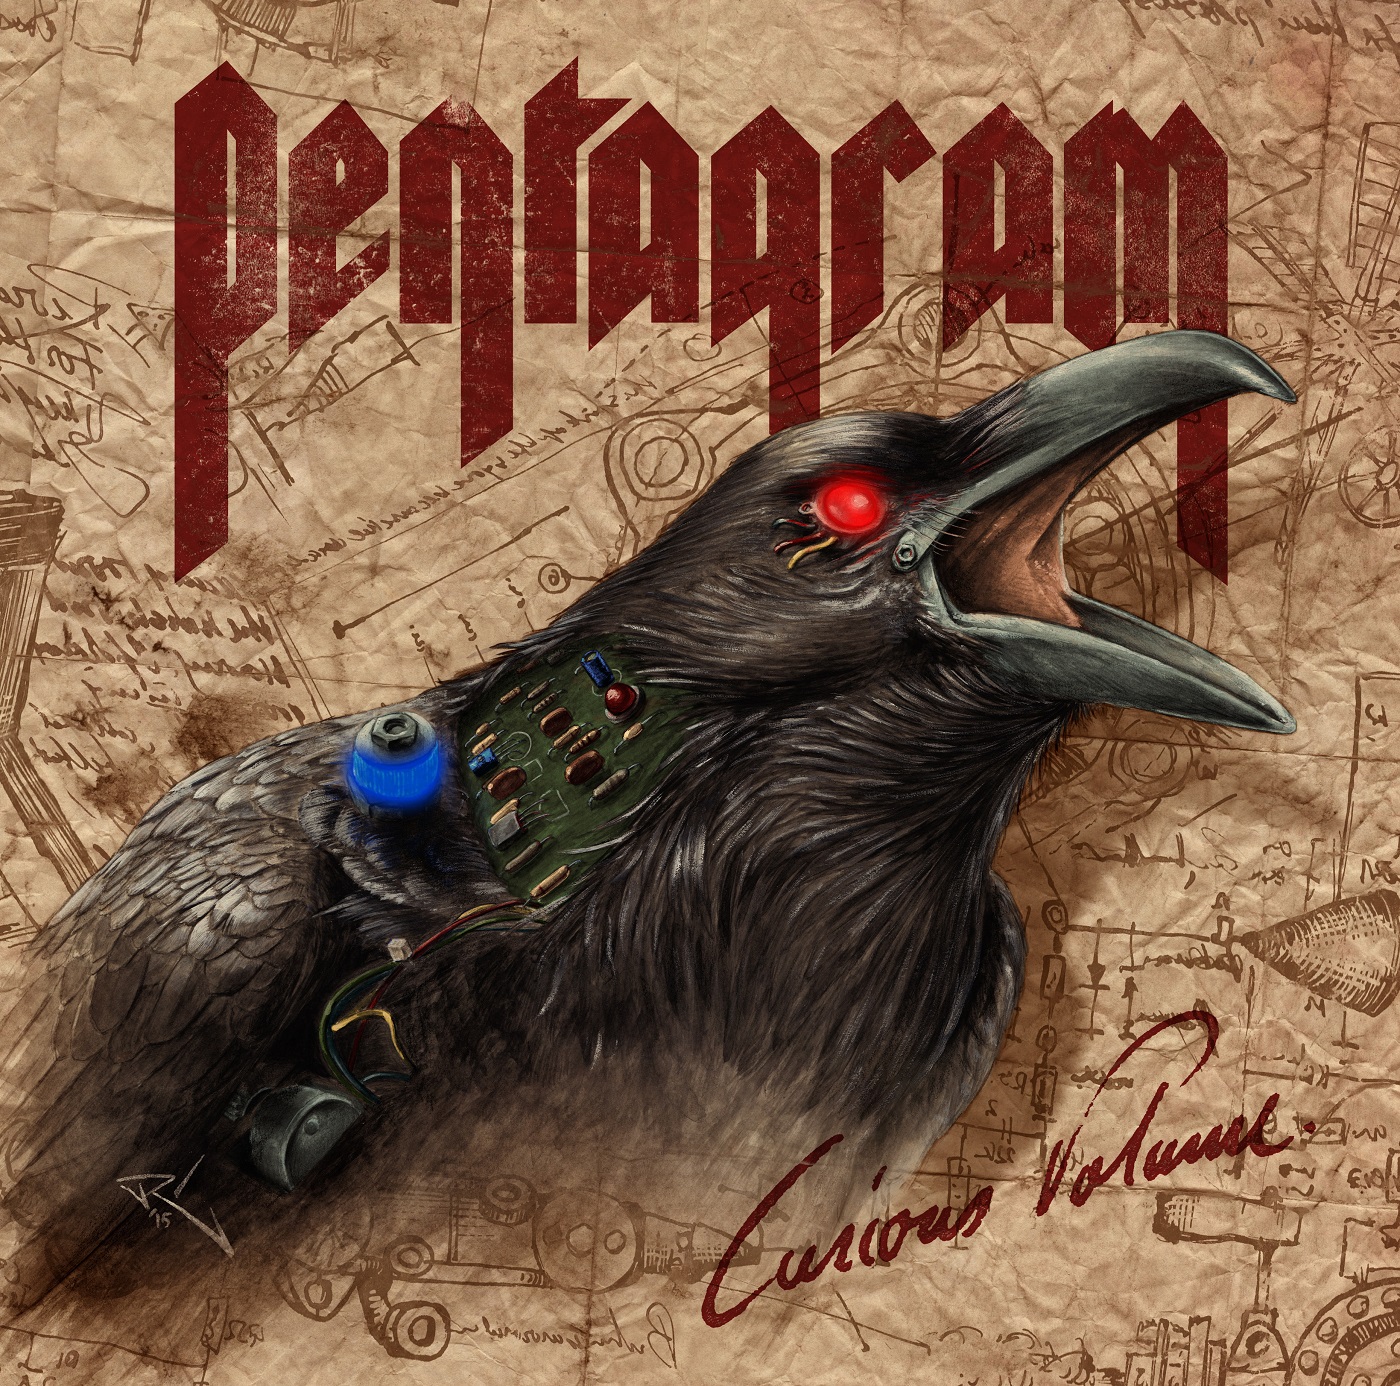 Pentagram – Curious Volume Review